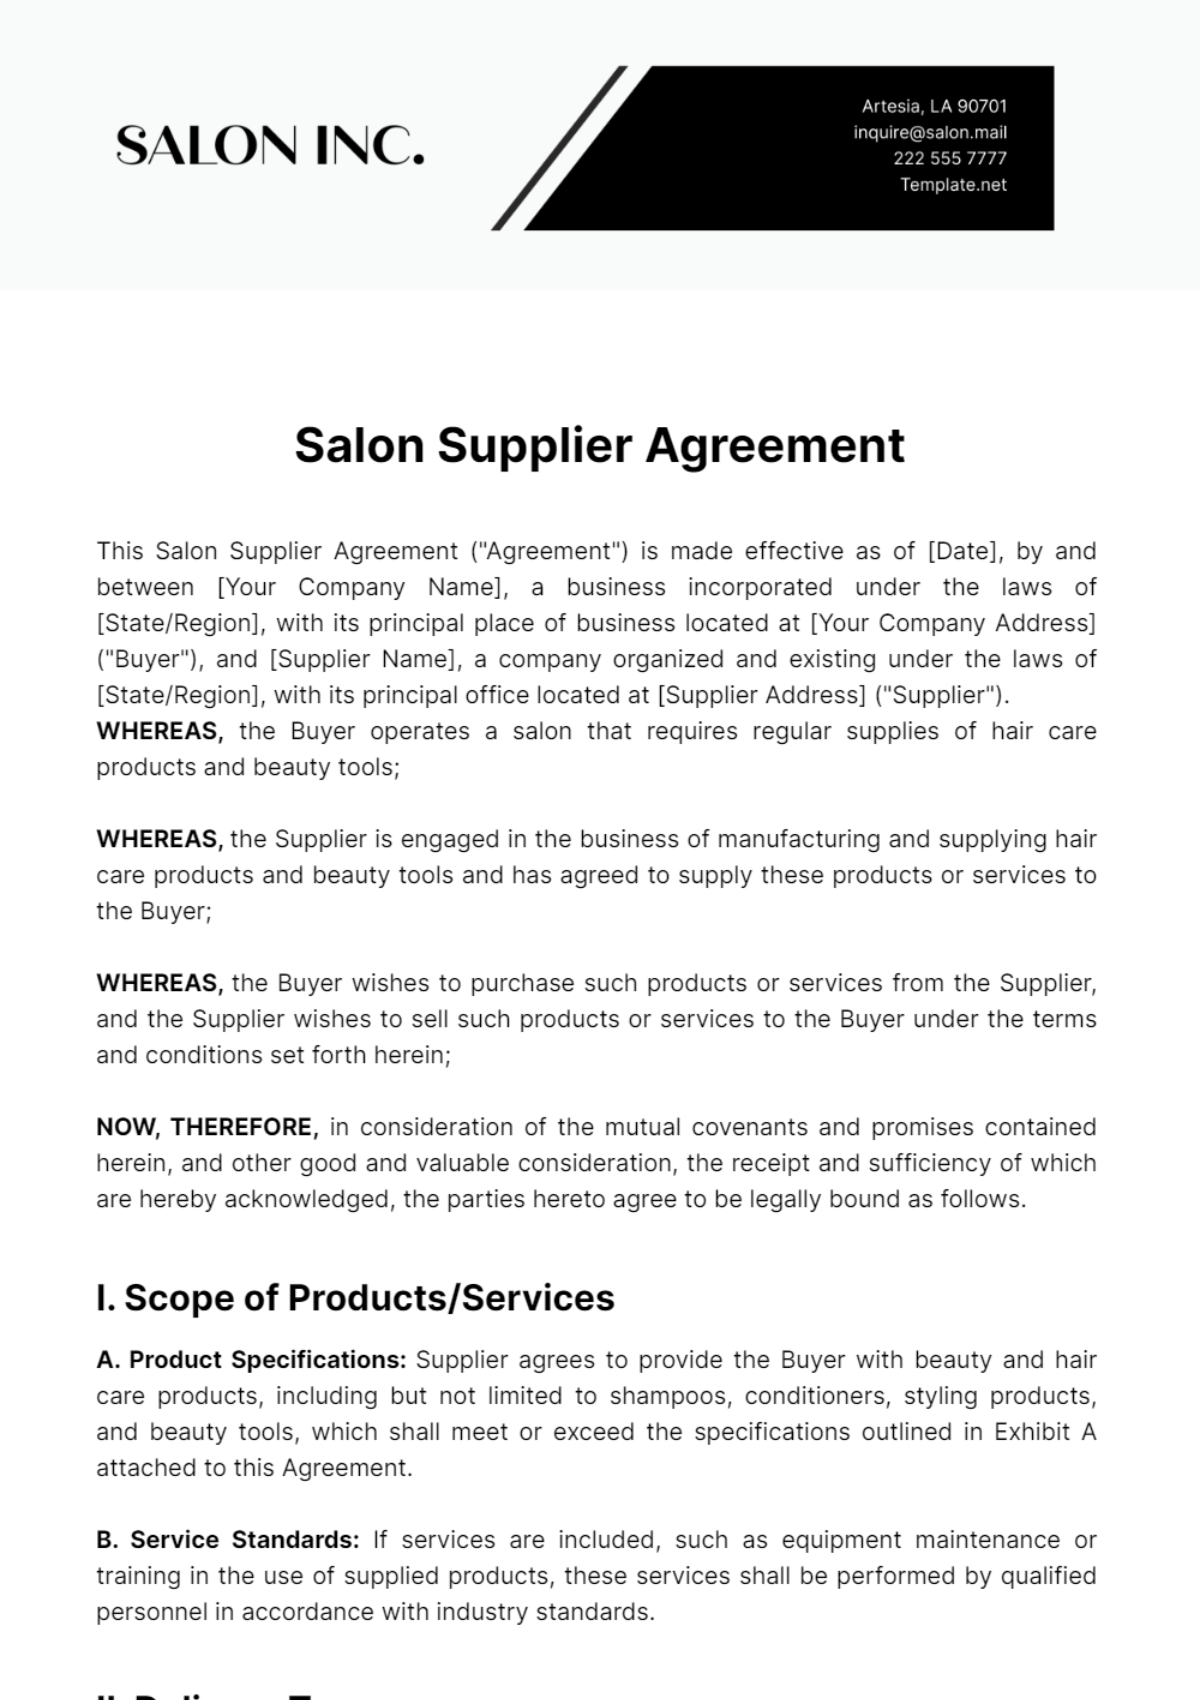 Salon Supplier Agreement Template